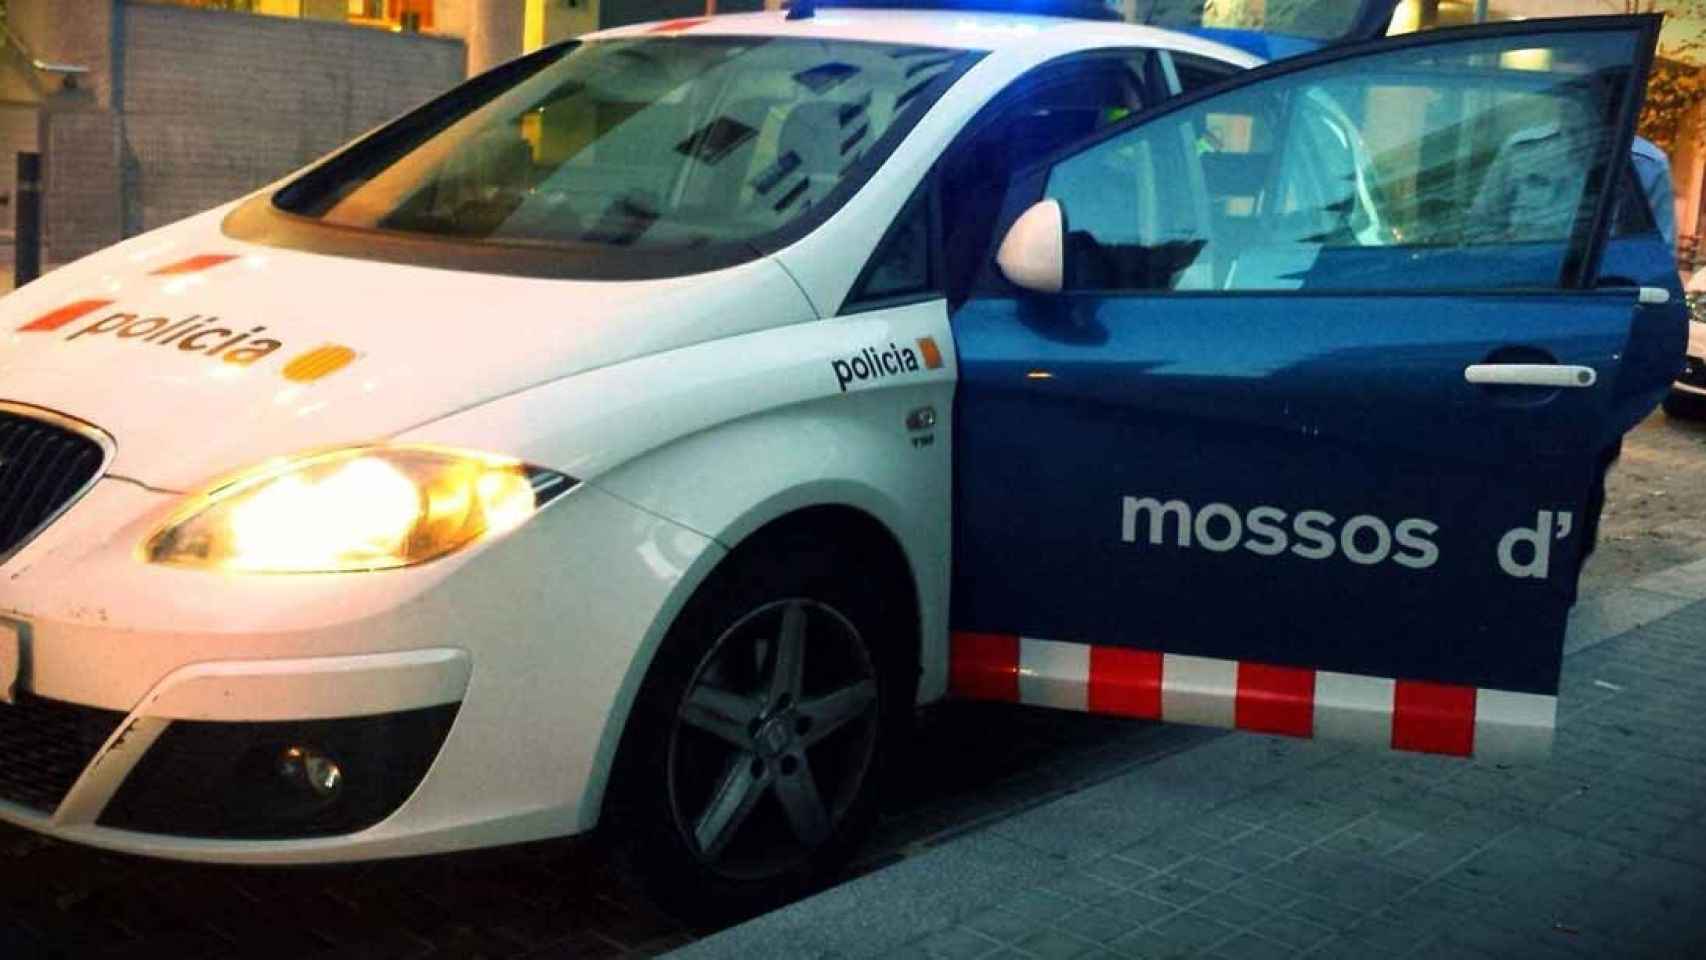 Los mossos han pillado 'in fraganti' a los dos ladrones / EP